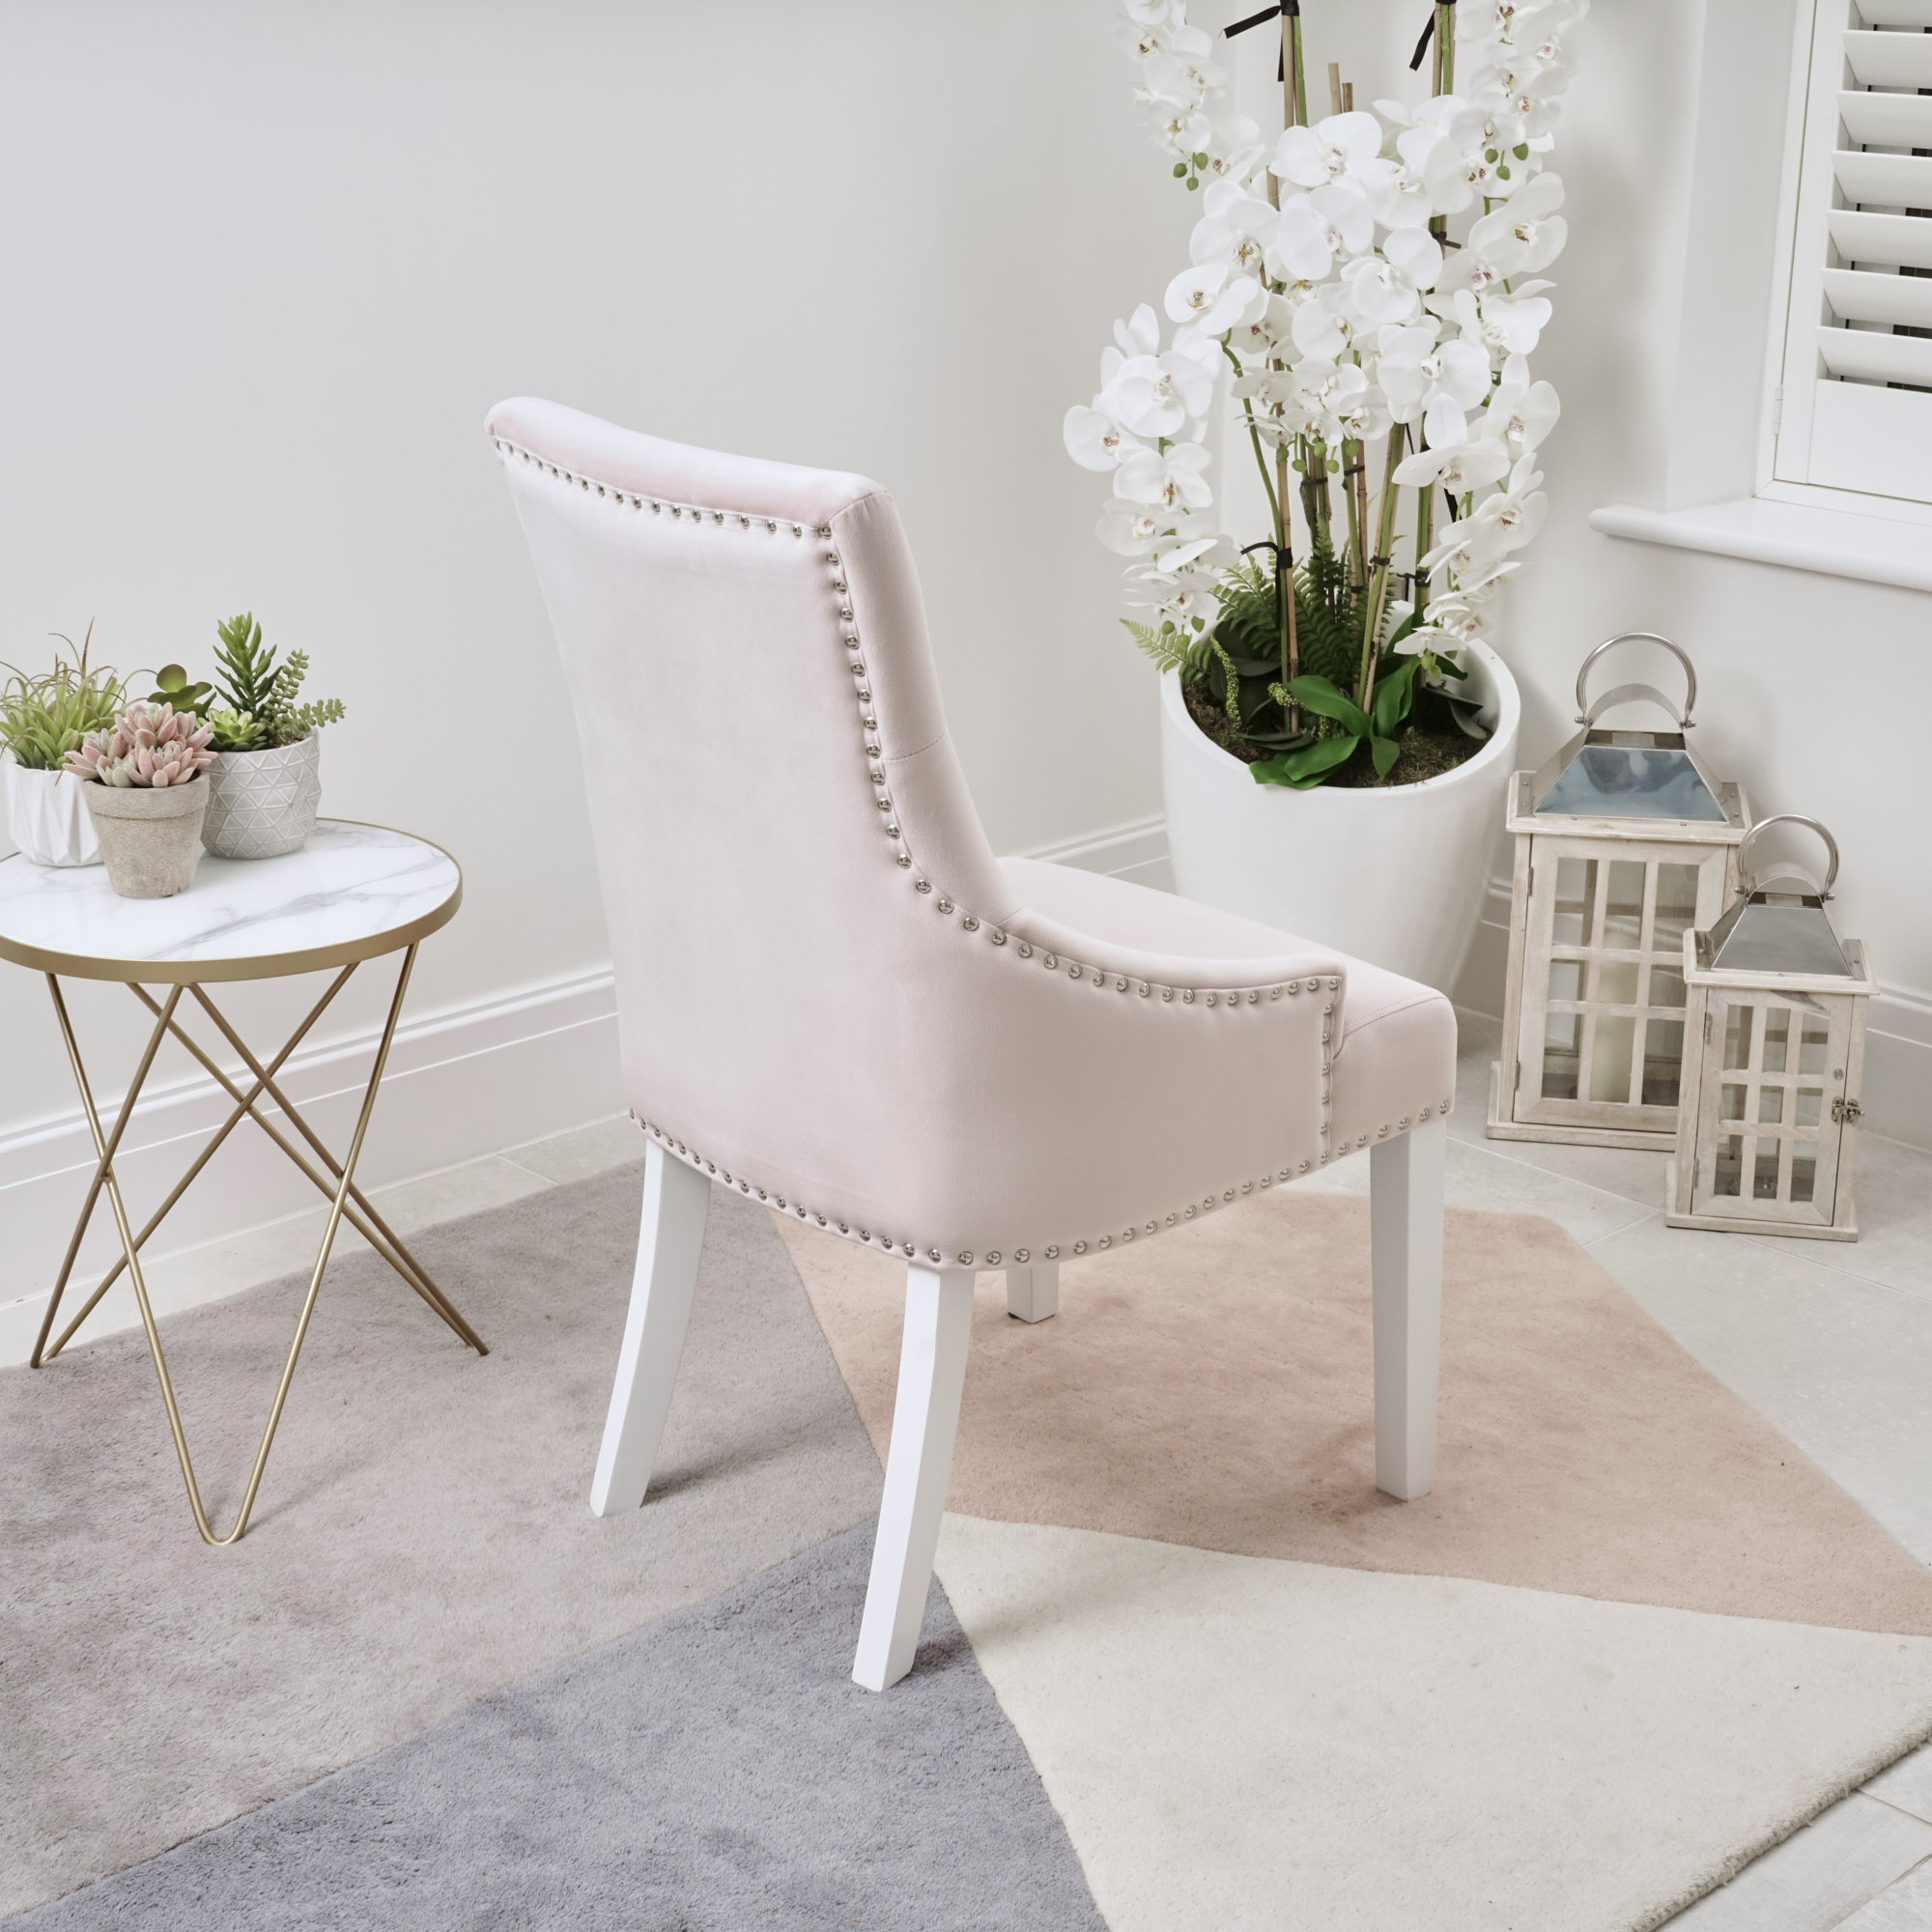 Set of 6 Chelsea Scoop Pink Velvet Dining Chair – White Legs